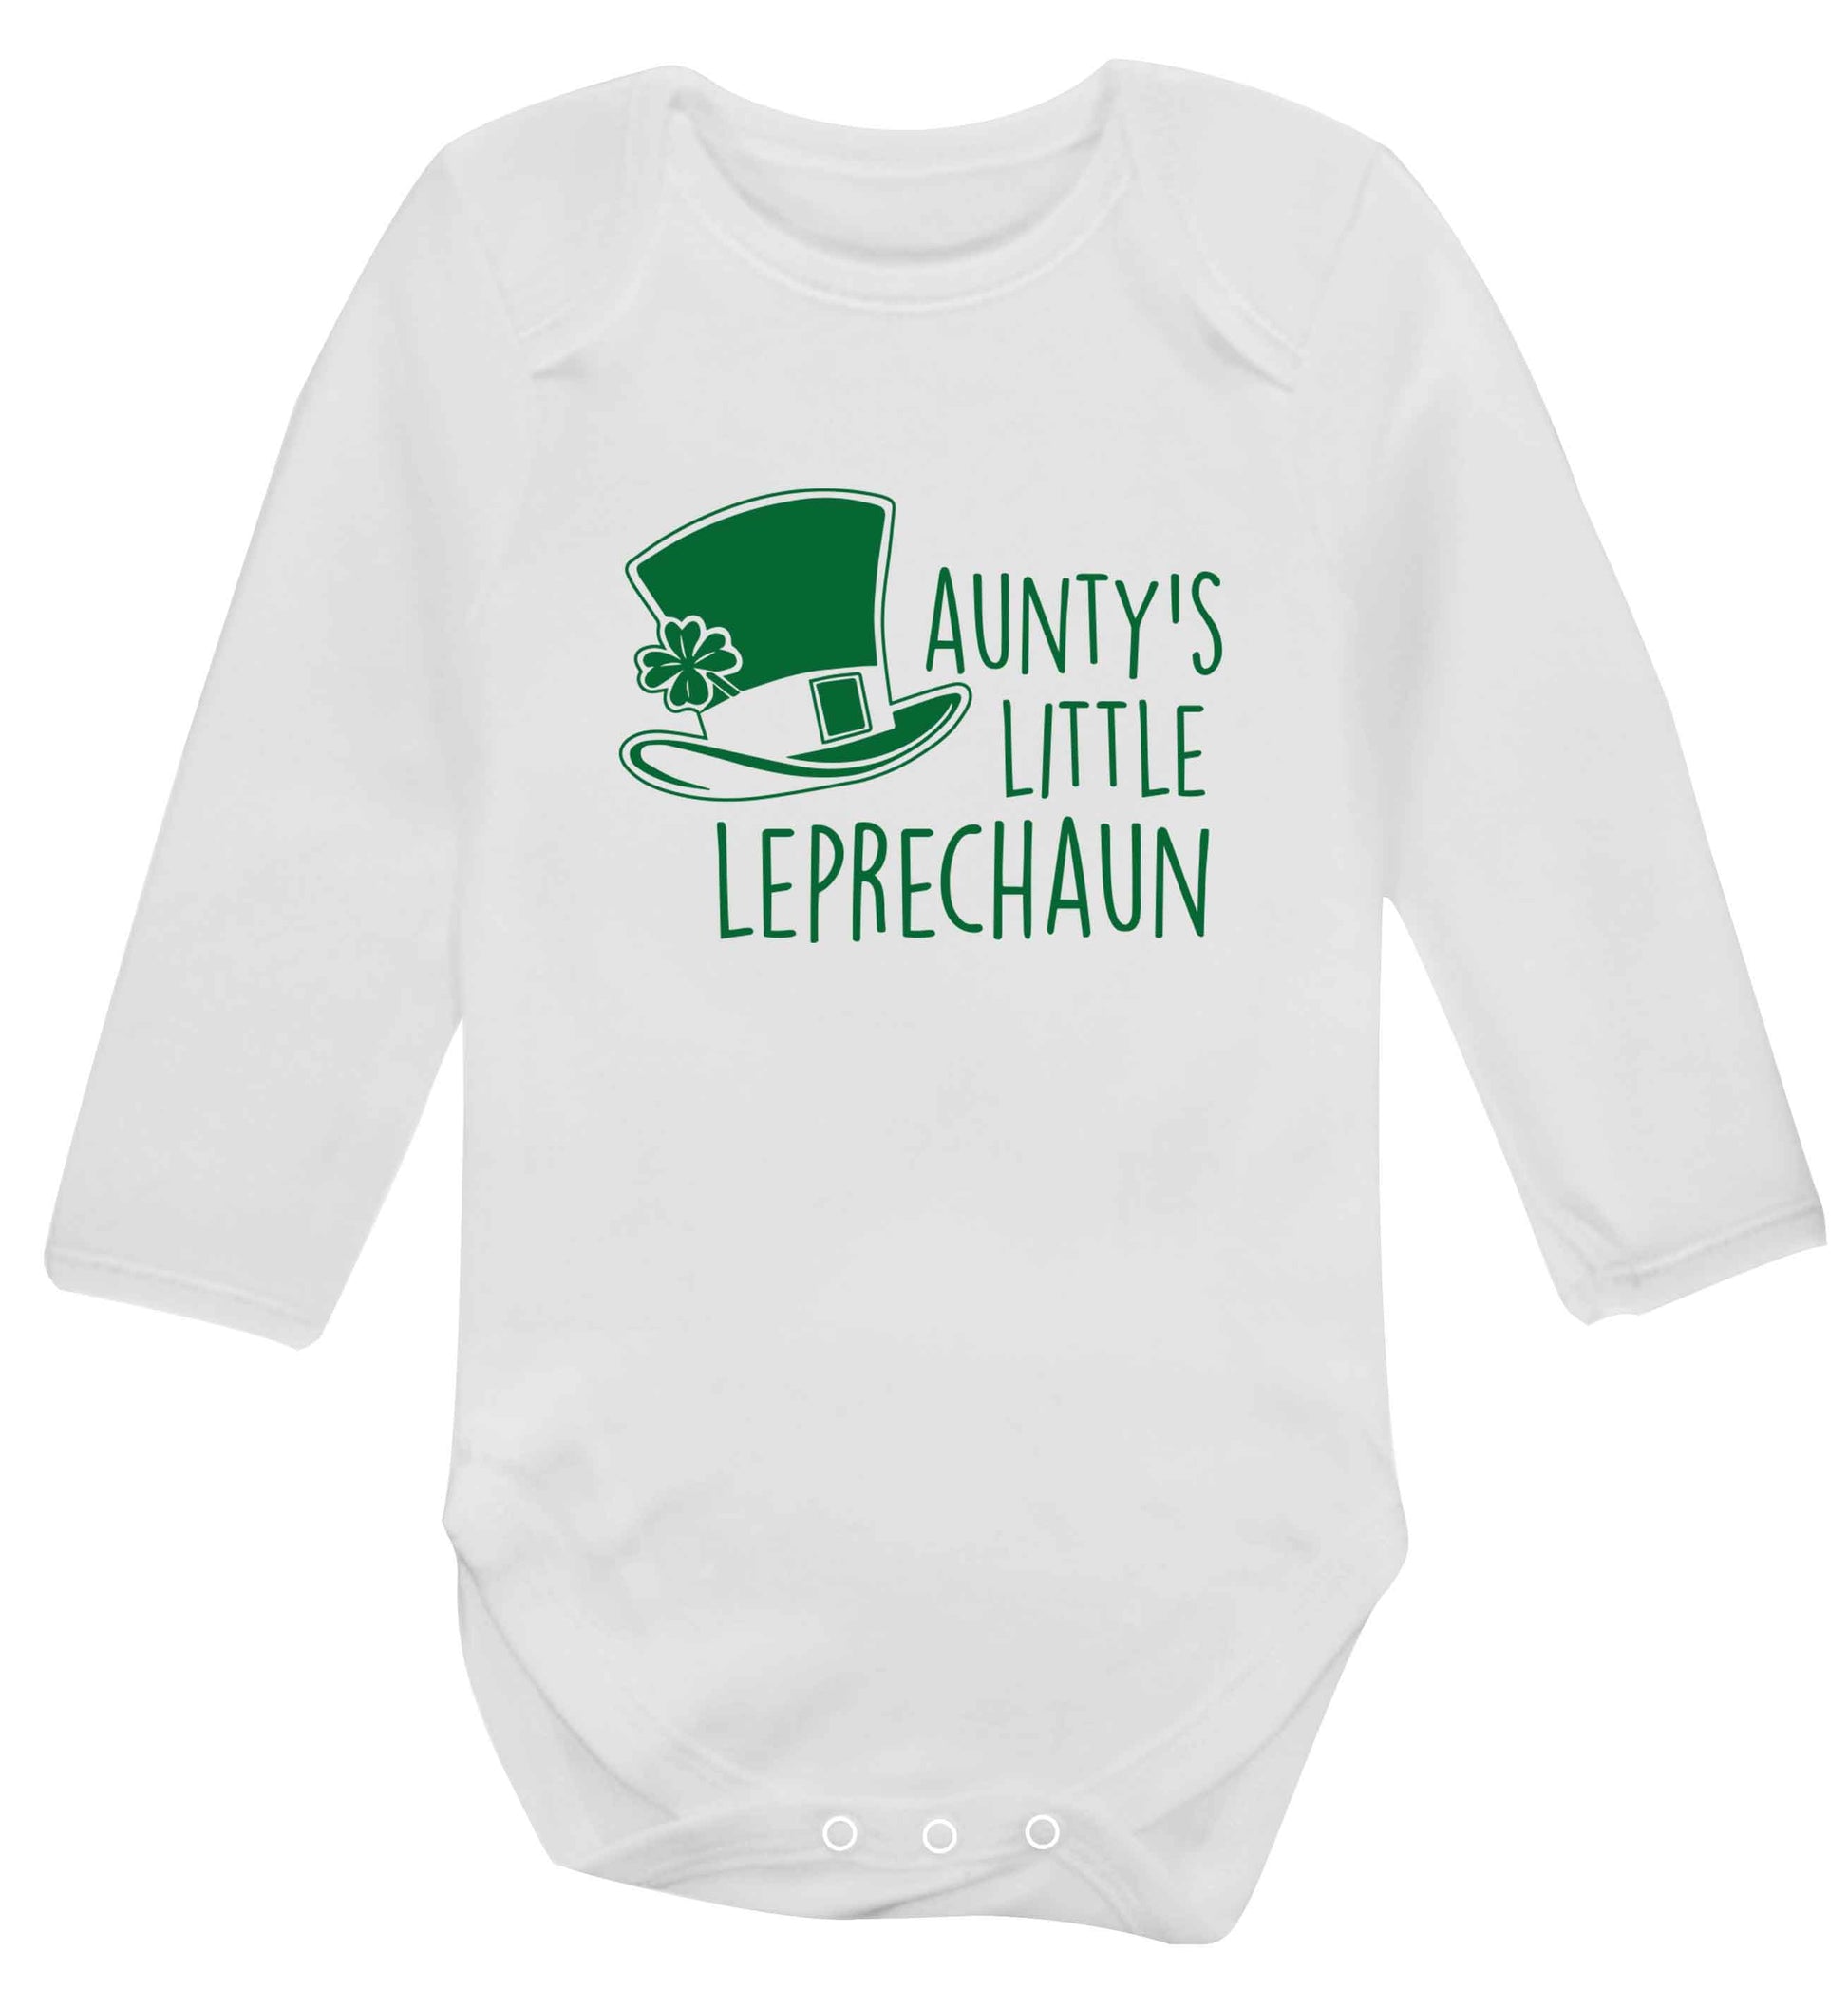 Aunty's little leprechaun baby vest long sleeved white 6-12 months